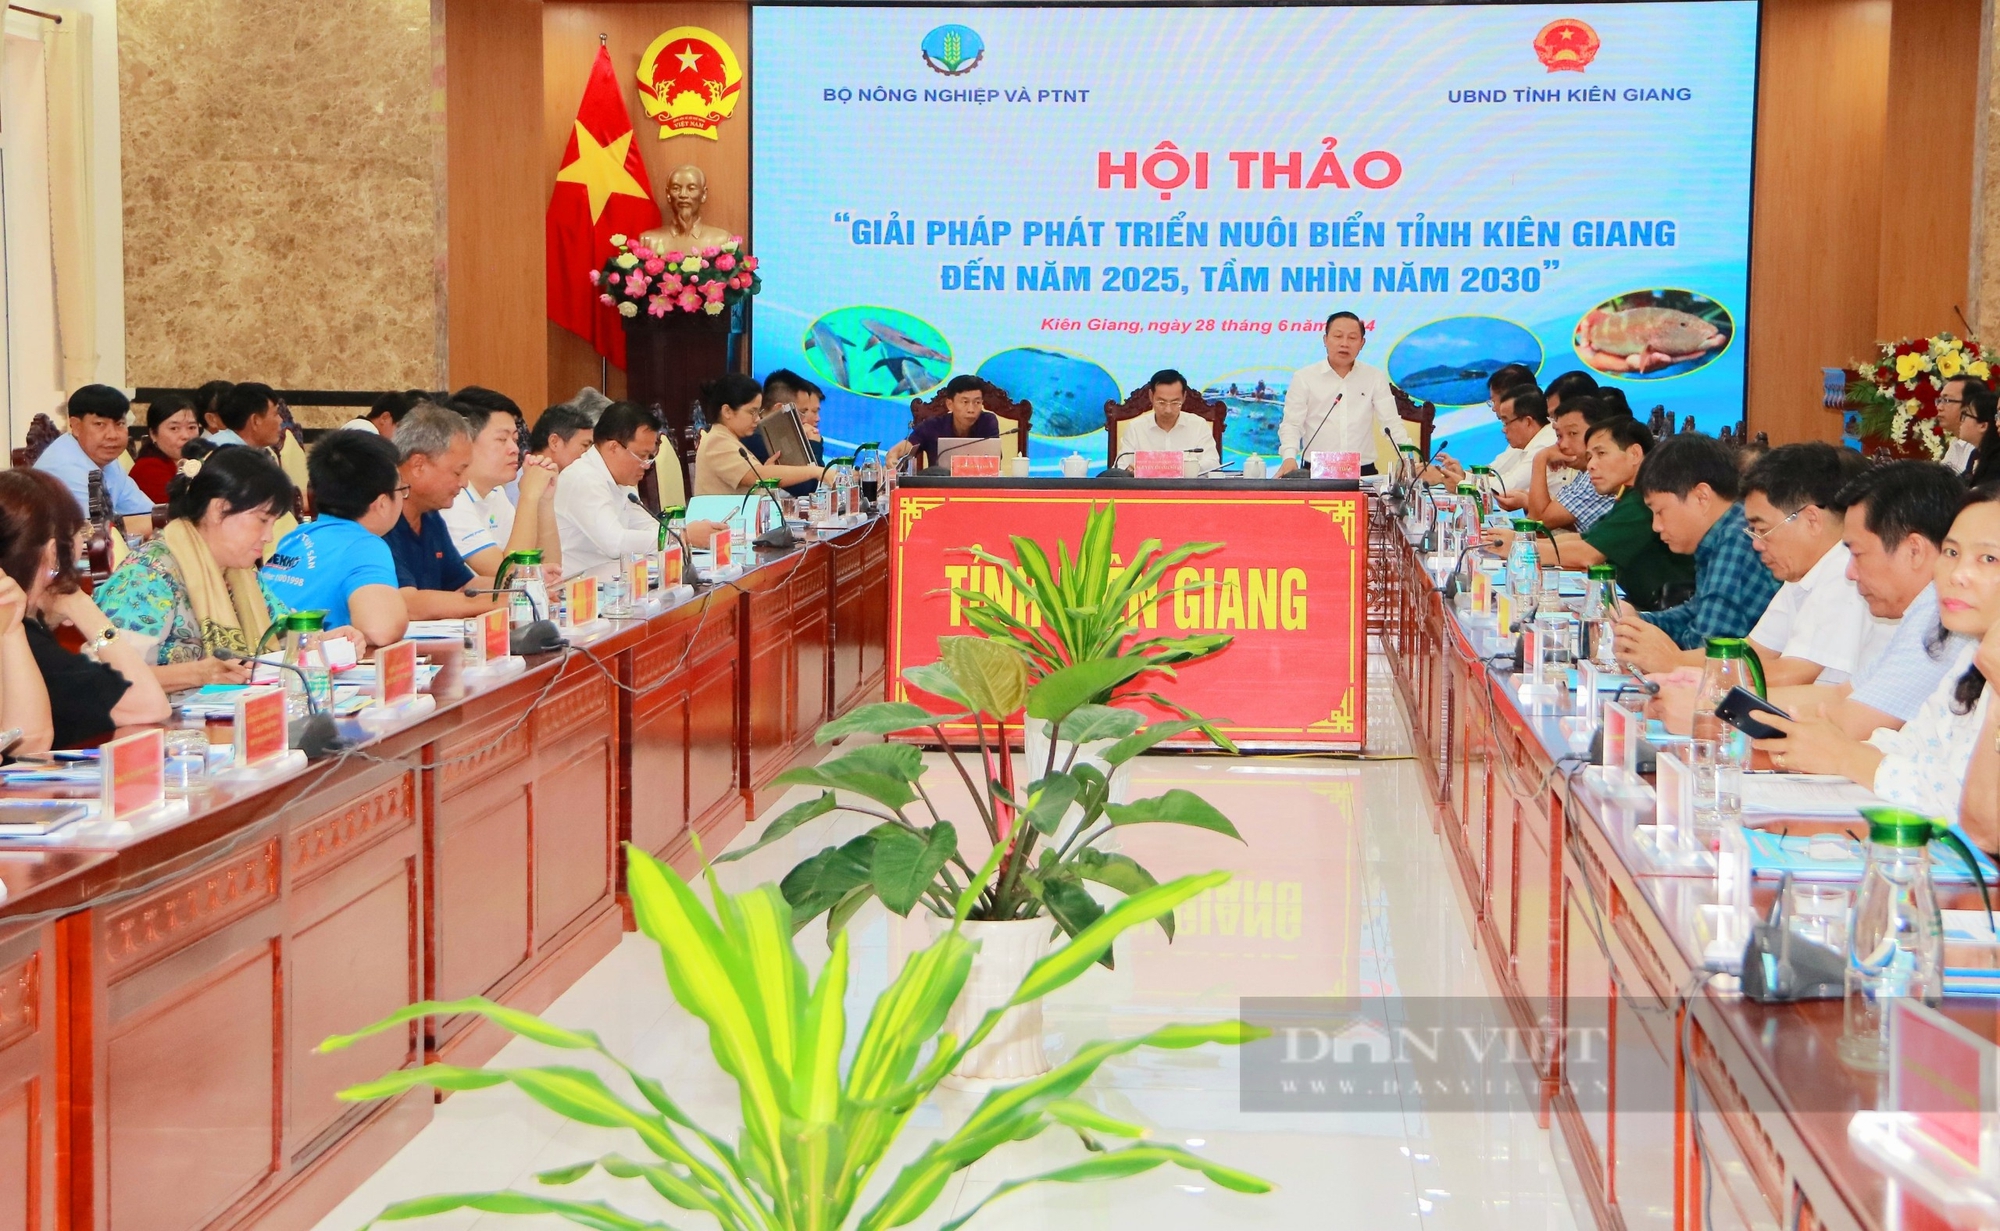 Kiên Giang: Bàn giải pháp phát triển nghề nuôi biển đến năm 2025, tầm nhìn năm 2030- Ảnh 4.